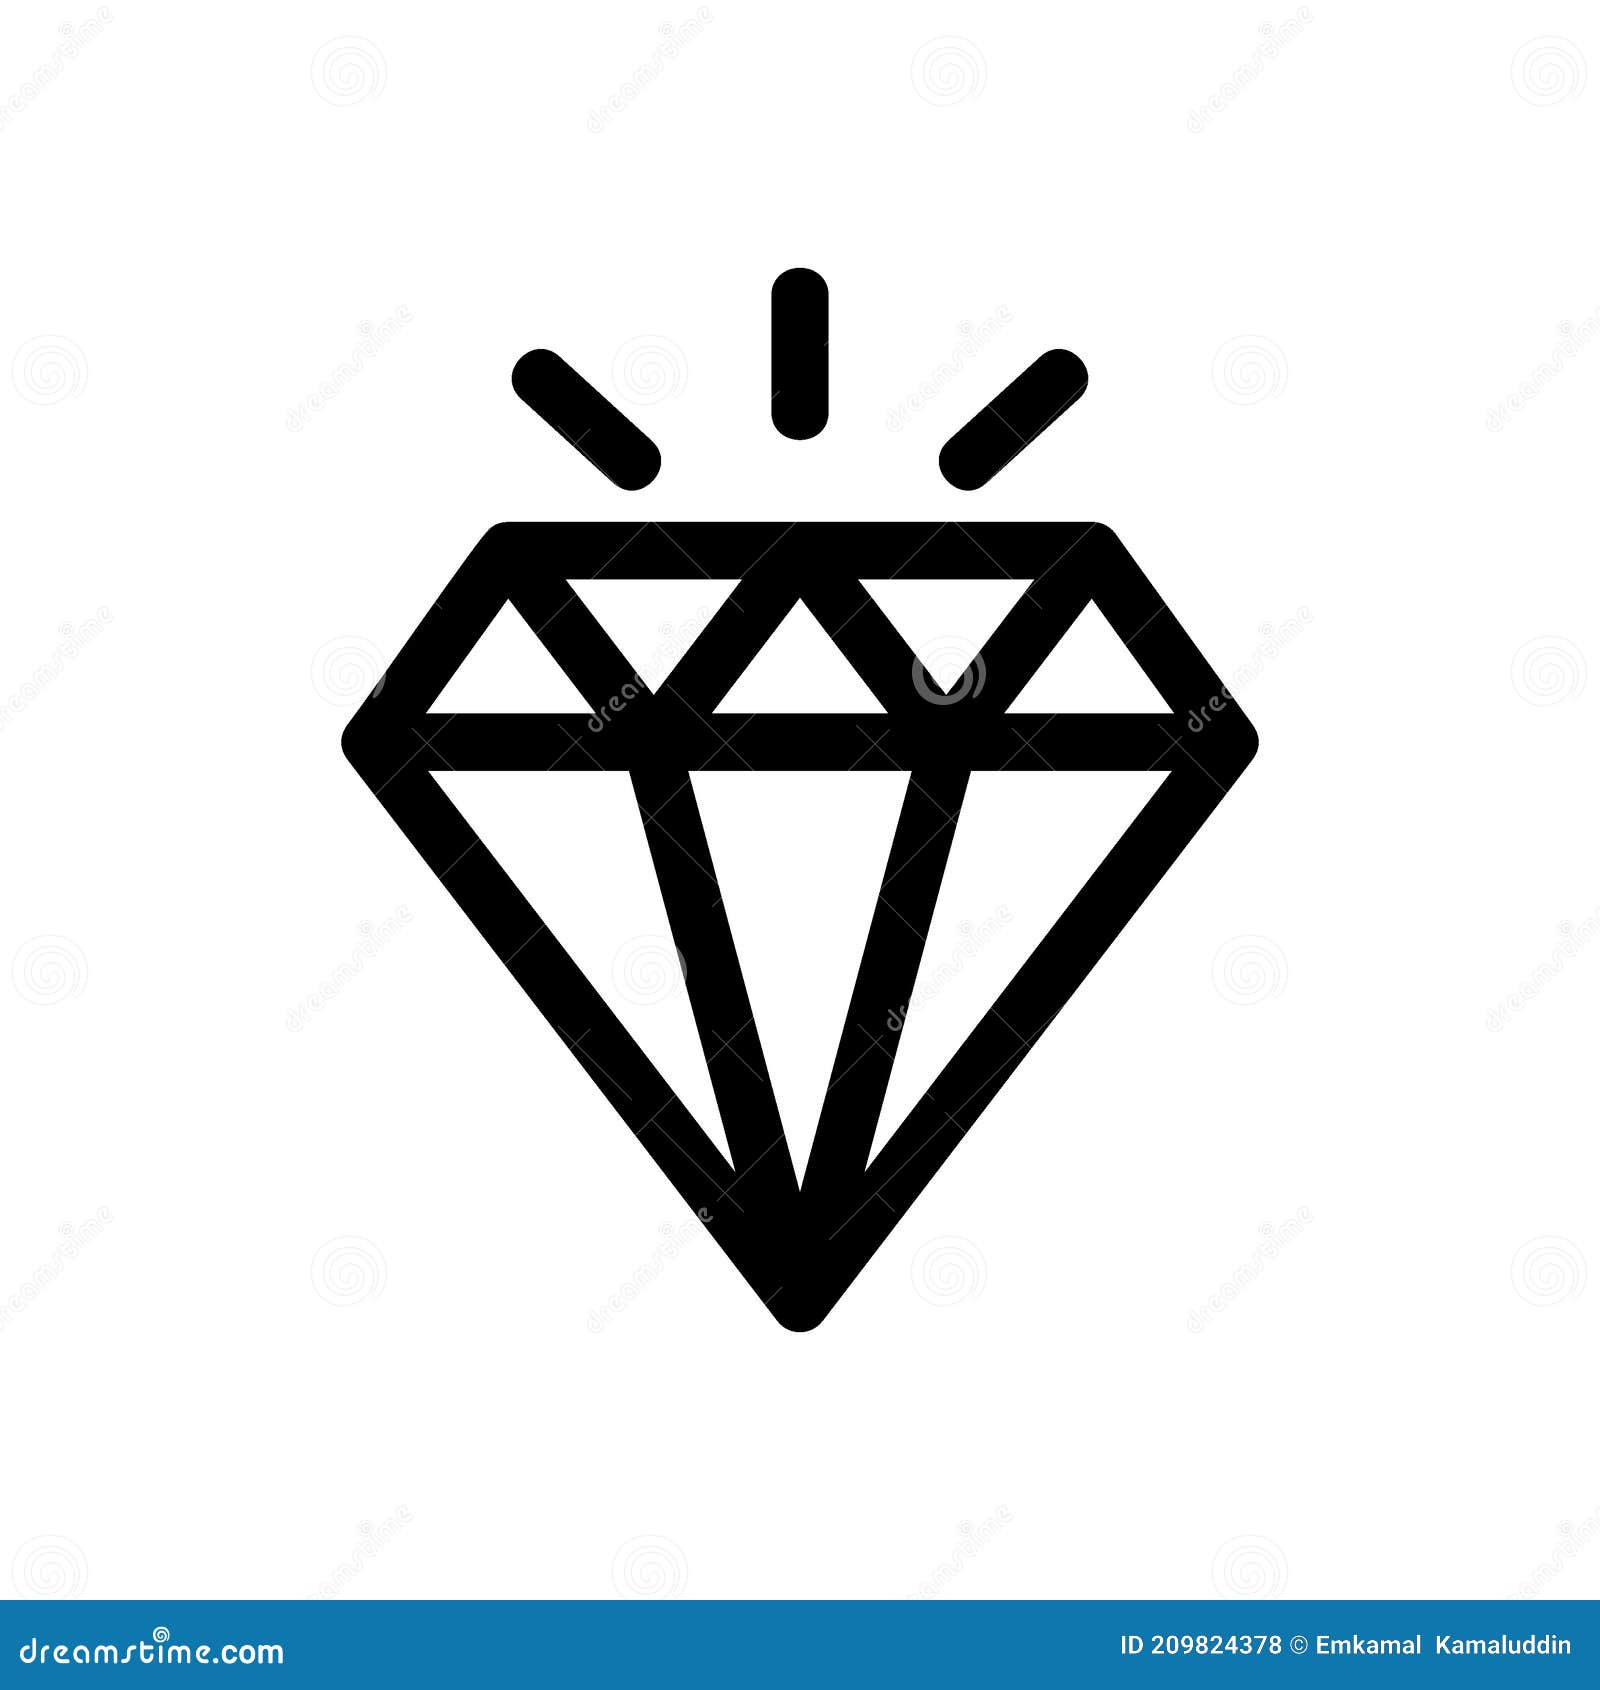 brillan icon or logo  sign   